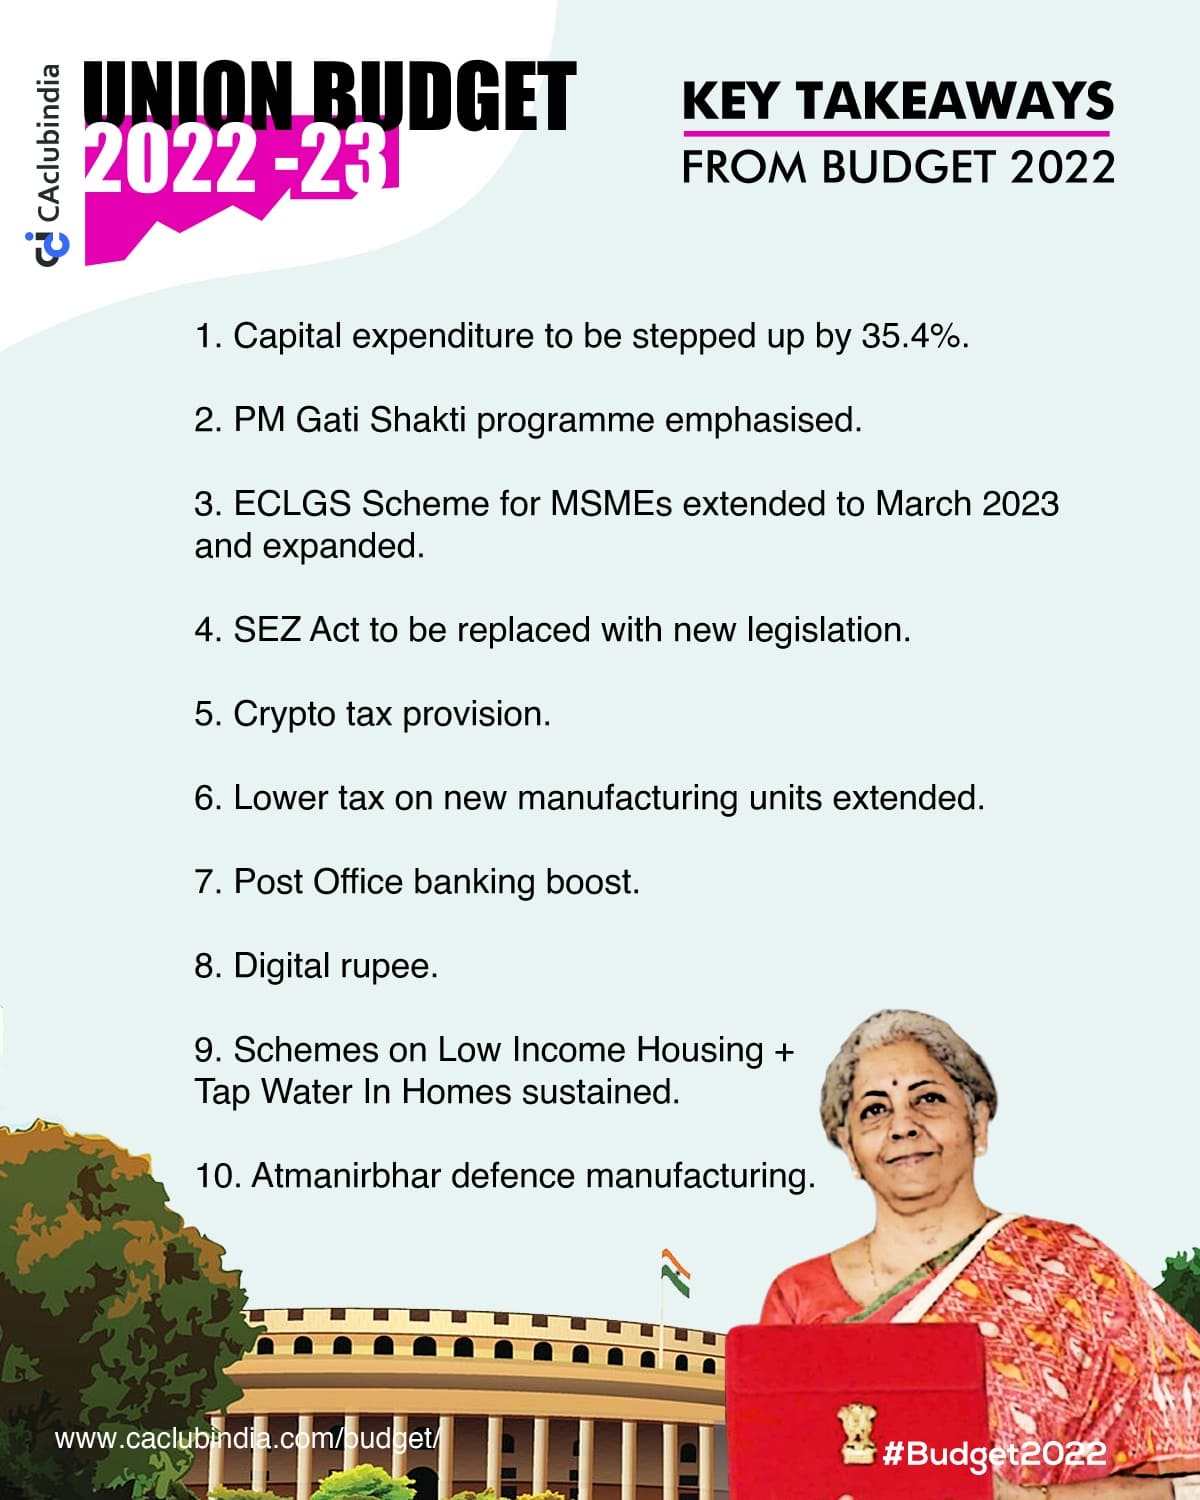 Key Takeaways from Budget 2022